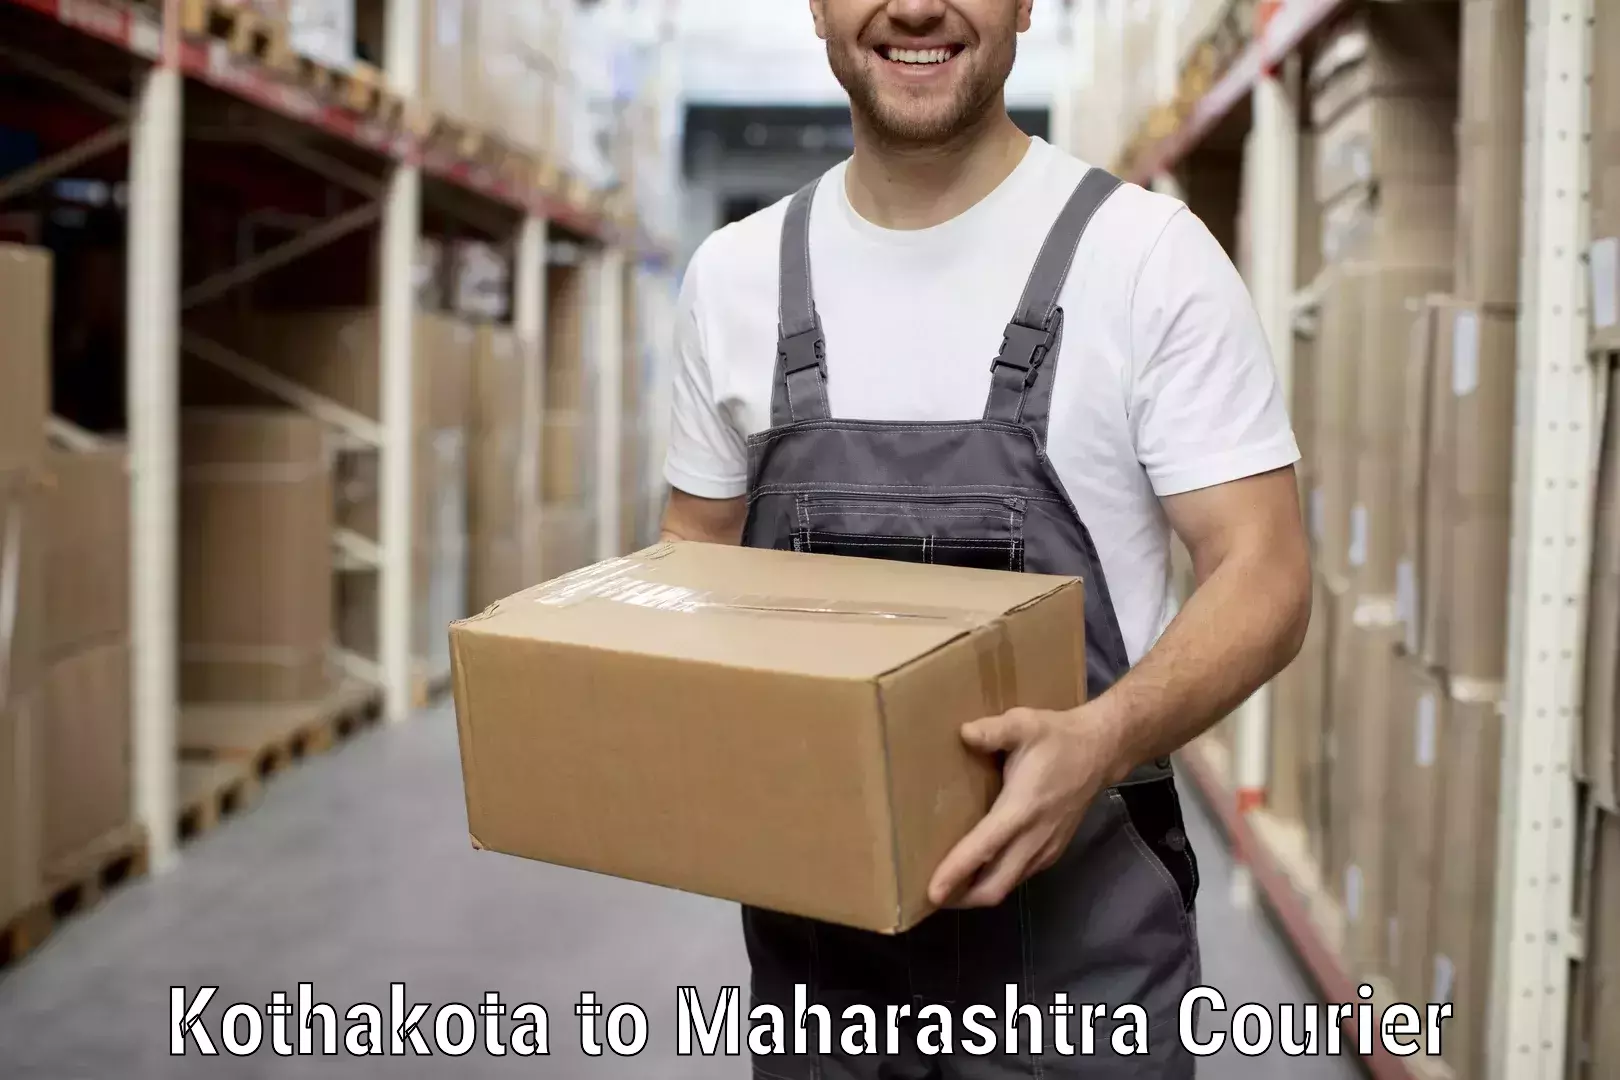 Dependable furniture transport Kothakota to Maharashtra